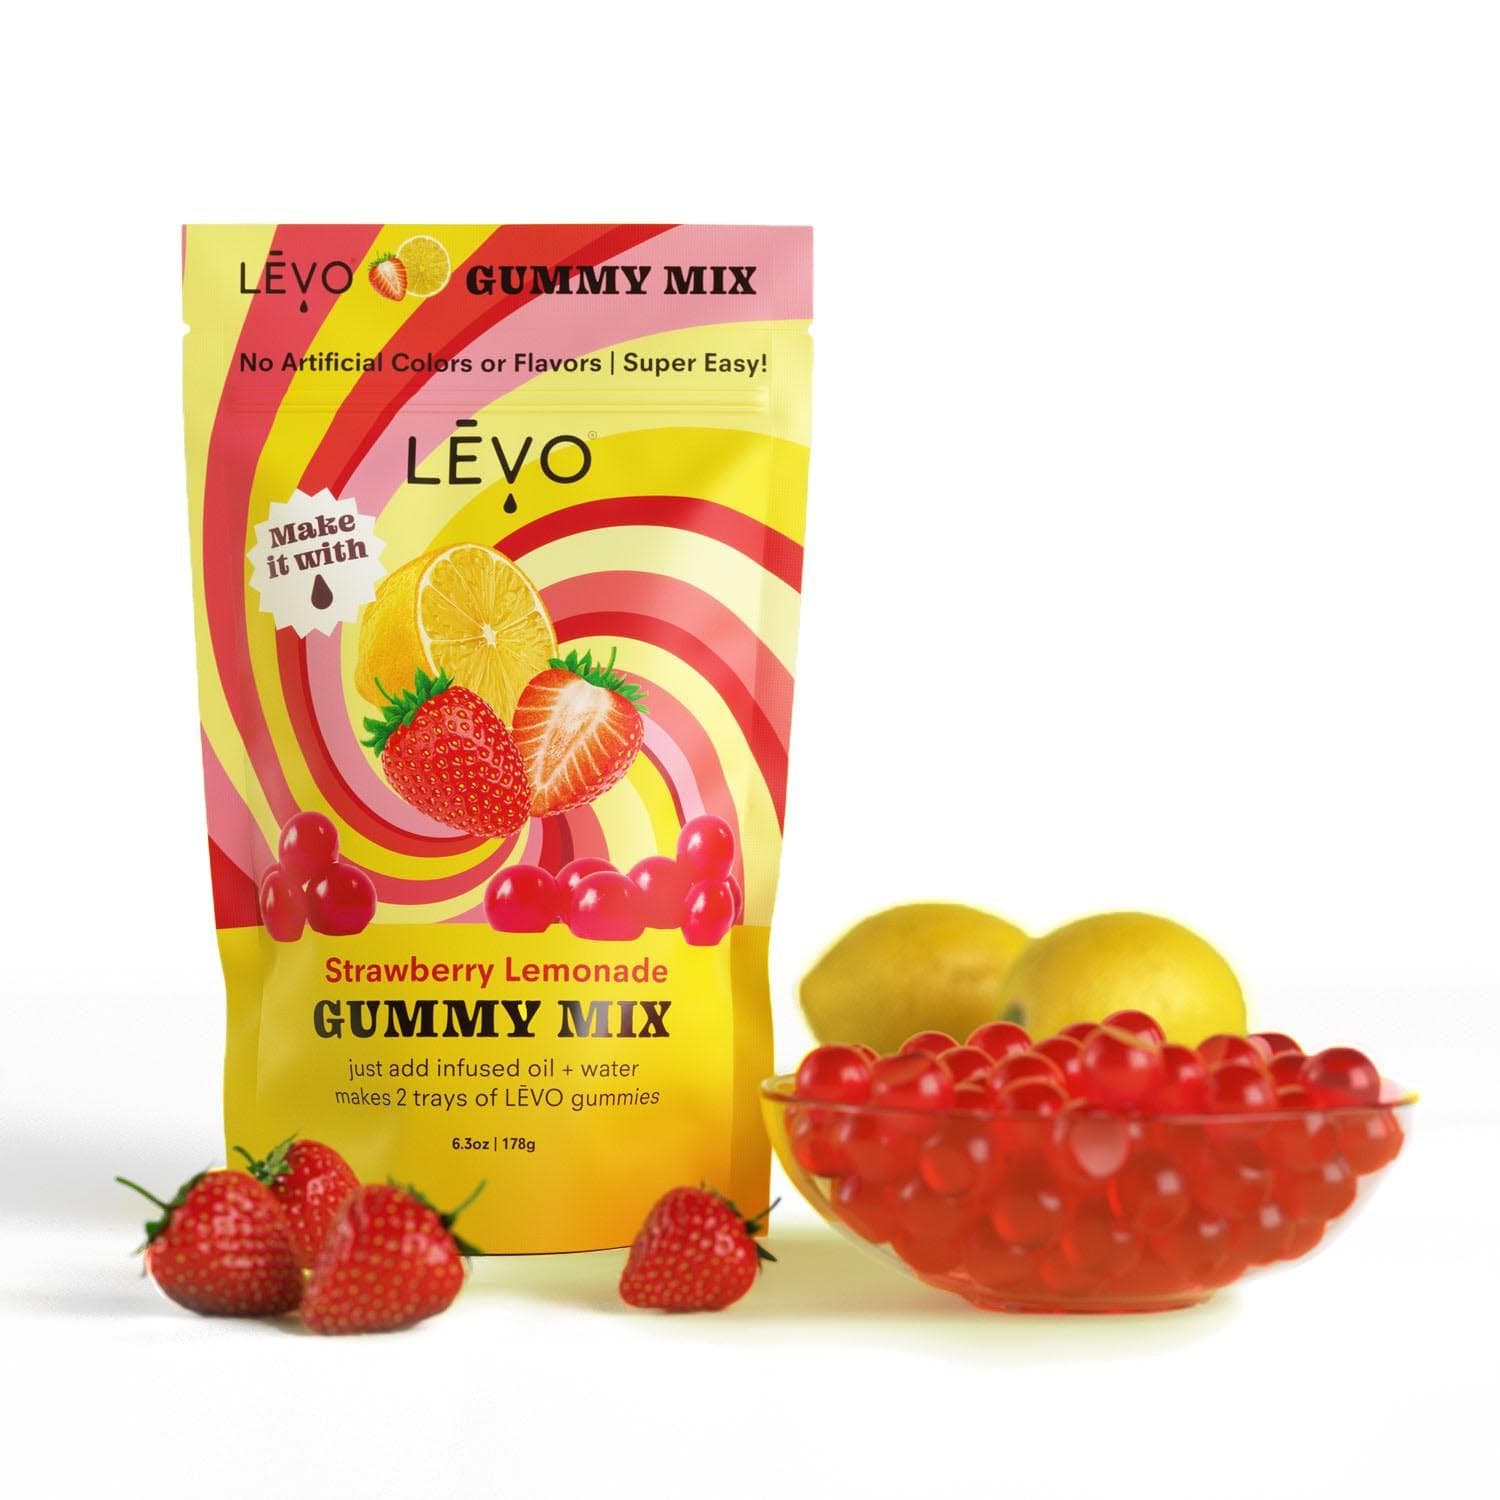 LEVO: Make Yummy Gummies